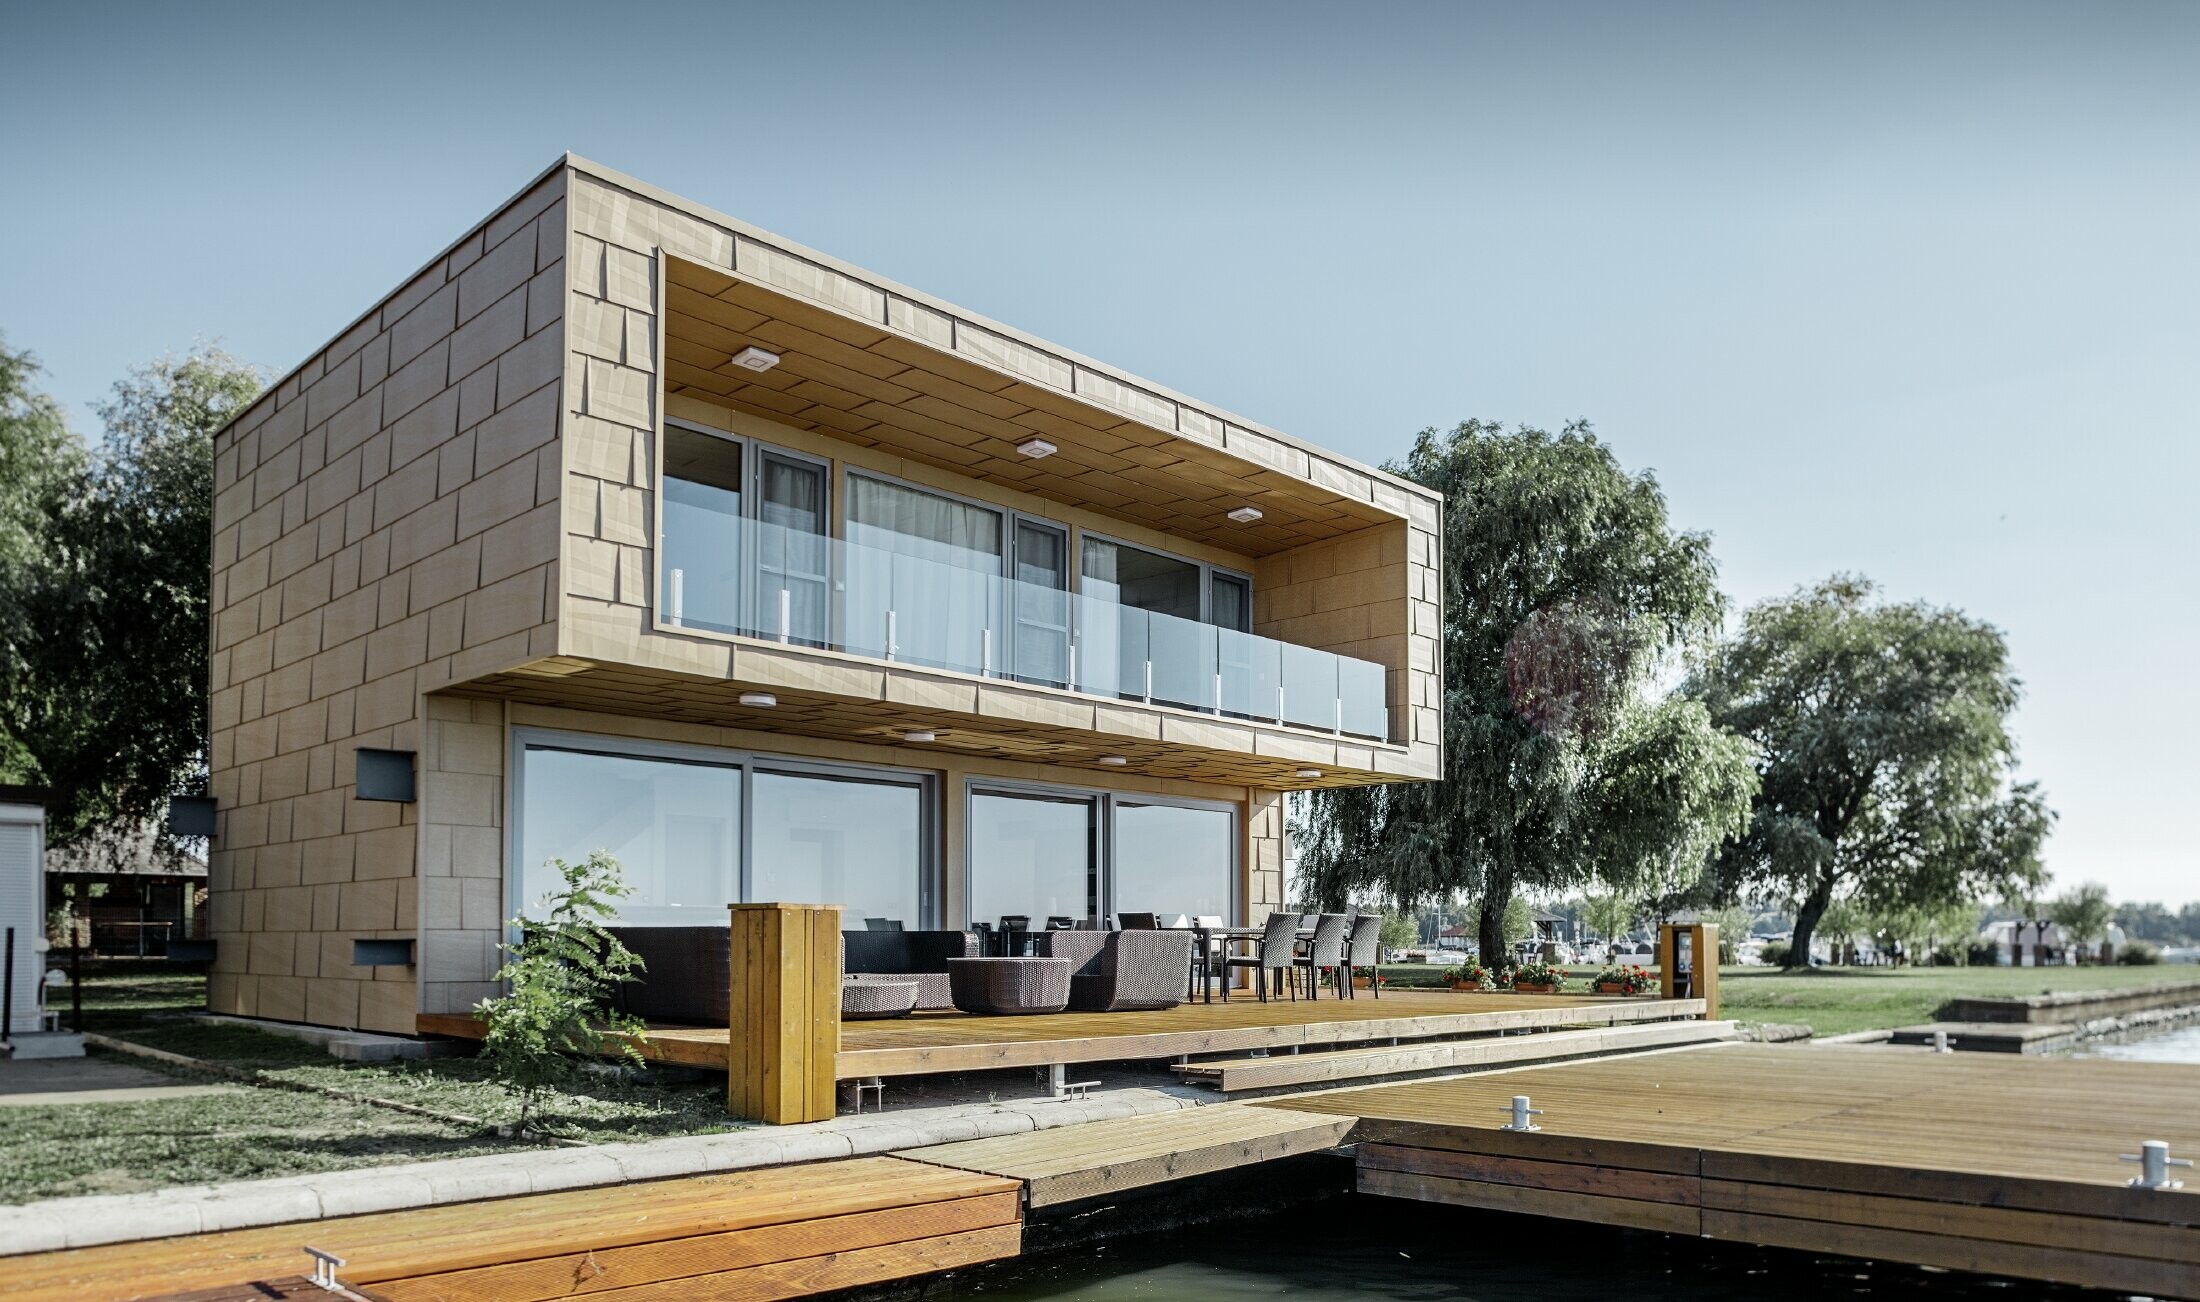 modernes Wochenendhaus mit Flachdach und großen Fensterflächen am See mit einer gekanteten Aluminiumfassade in sandbraun